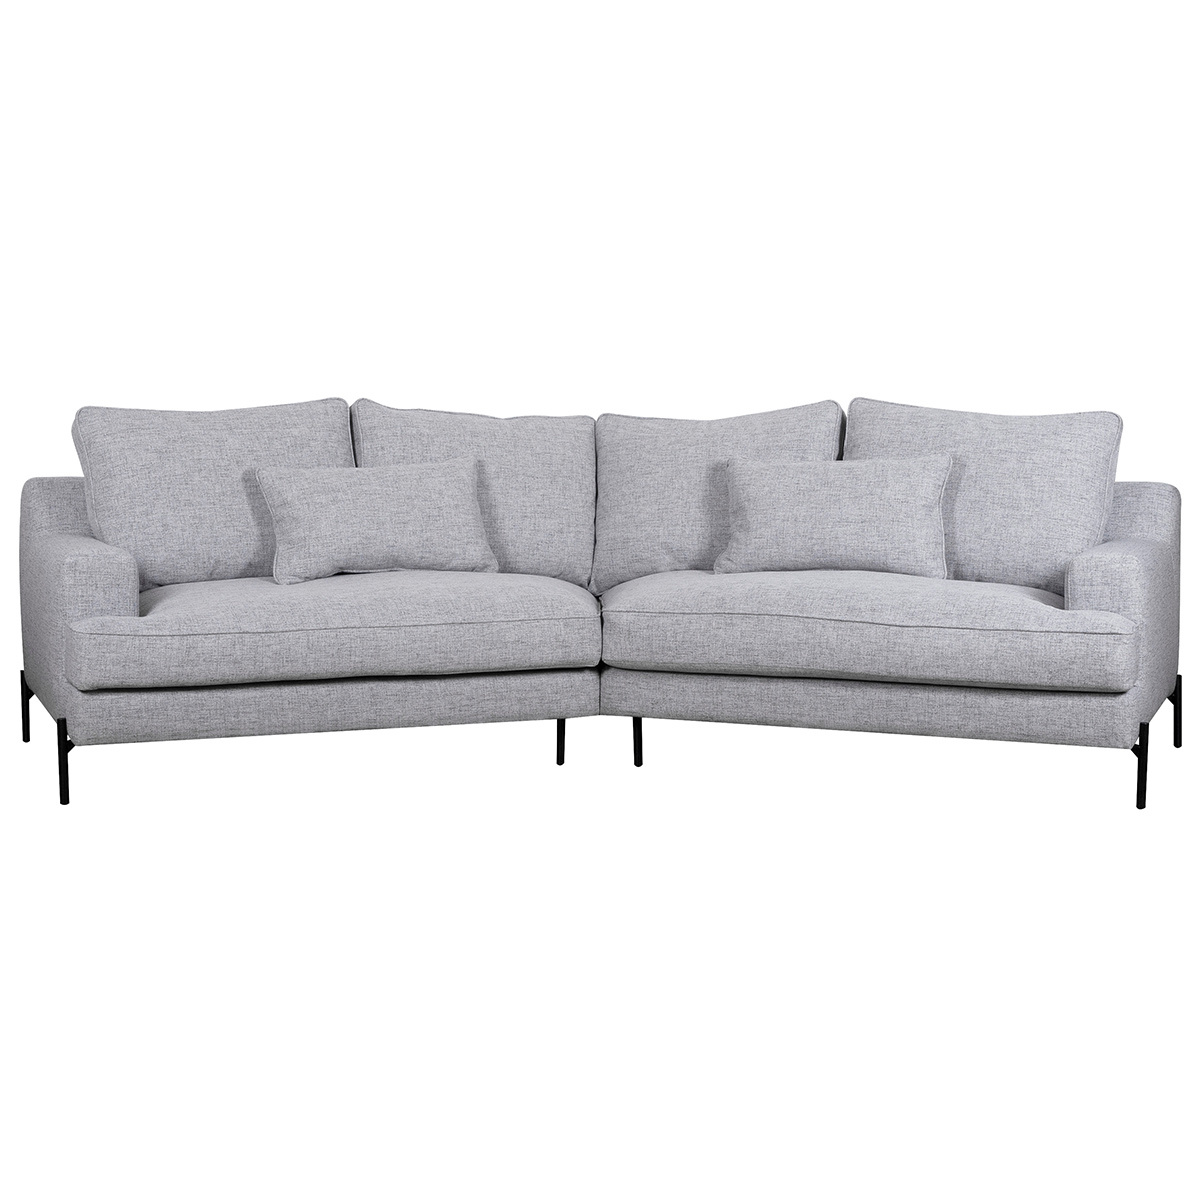 Canapé d'angle design 5 places en tissu gris chiné et métal noir PUCHKINE vue1